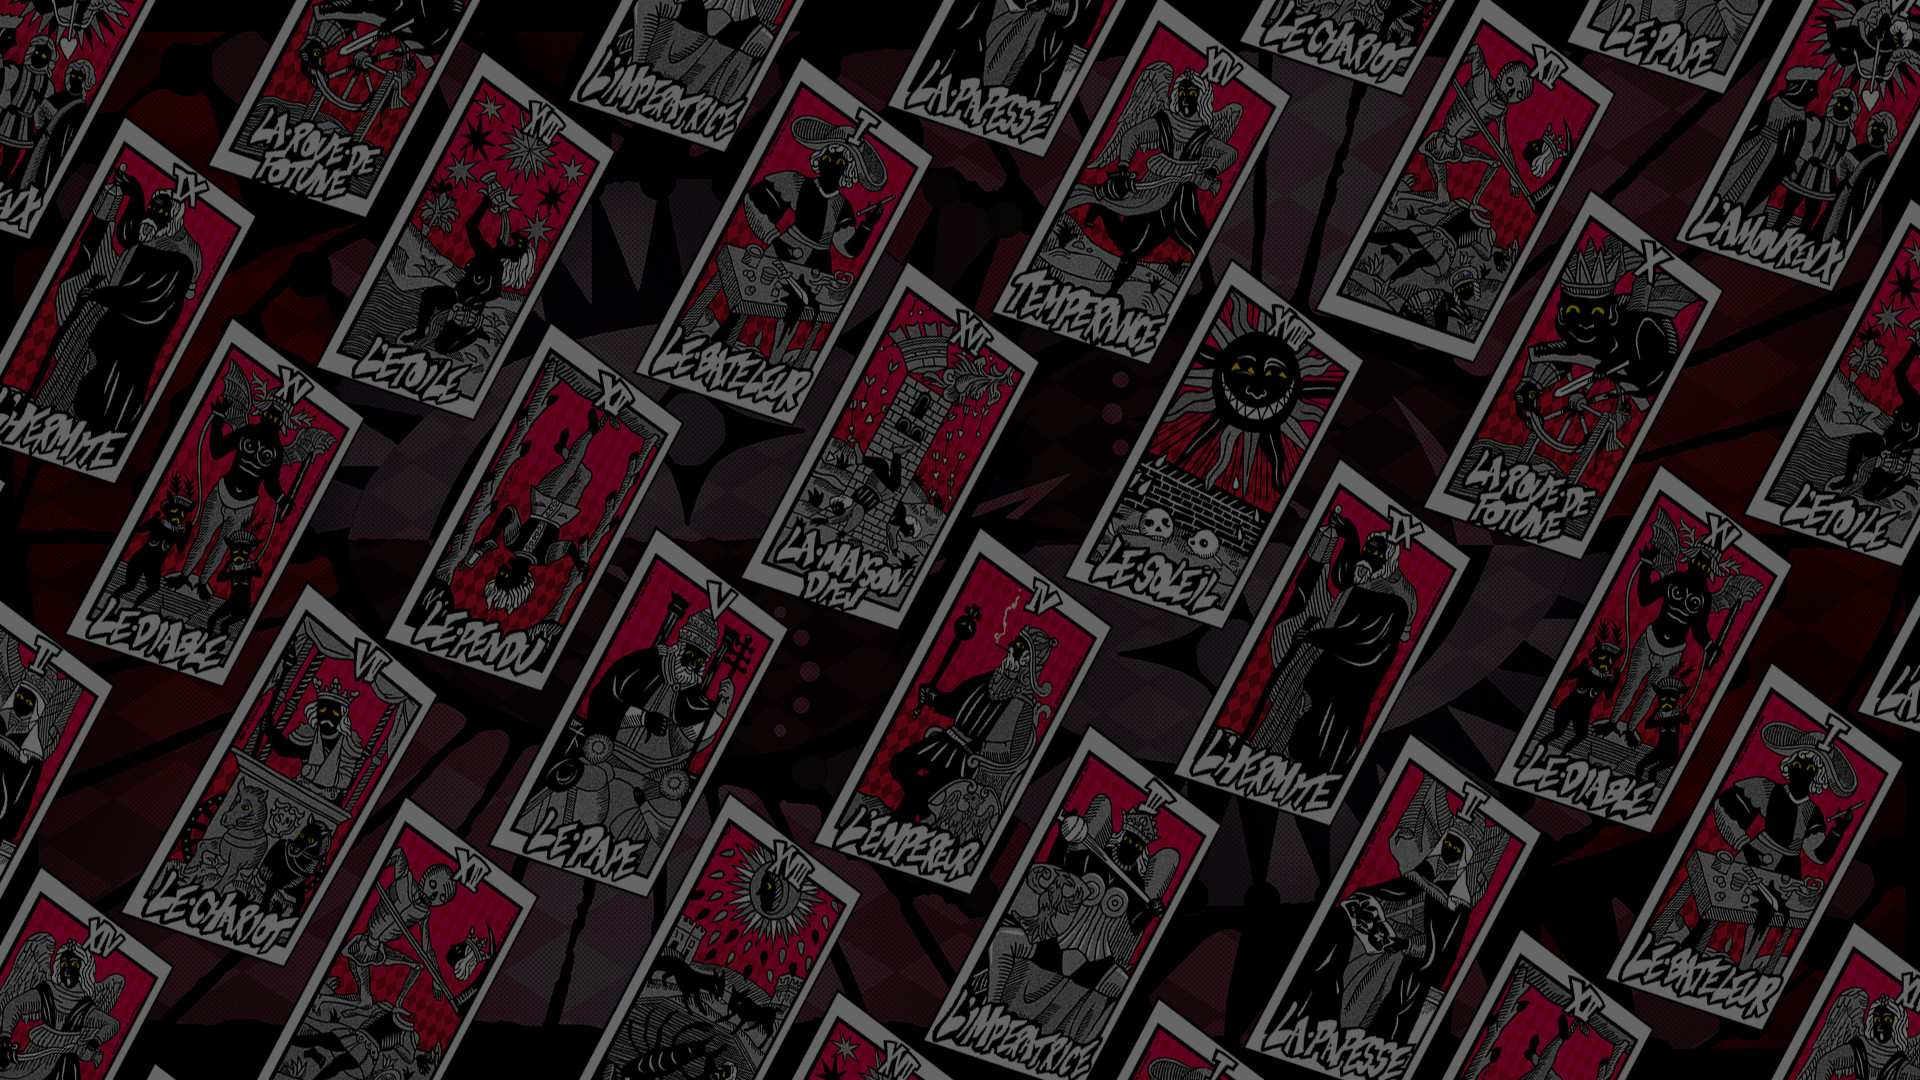 Tarot Card And Arcanas - Tarot Card Persona 5 , HD Wallpaper & Backgrounds